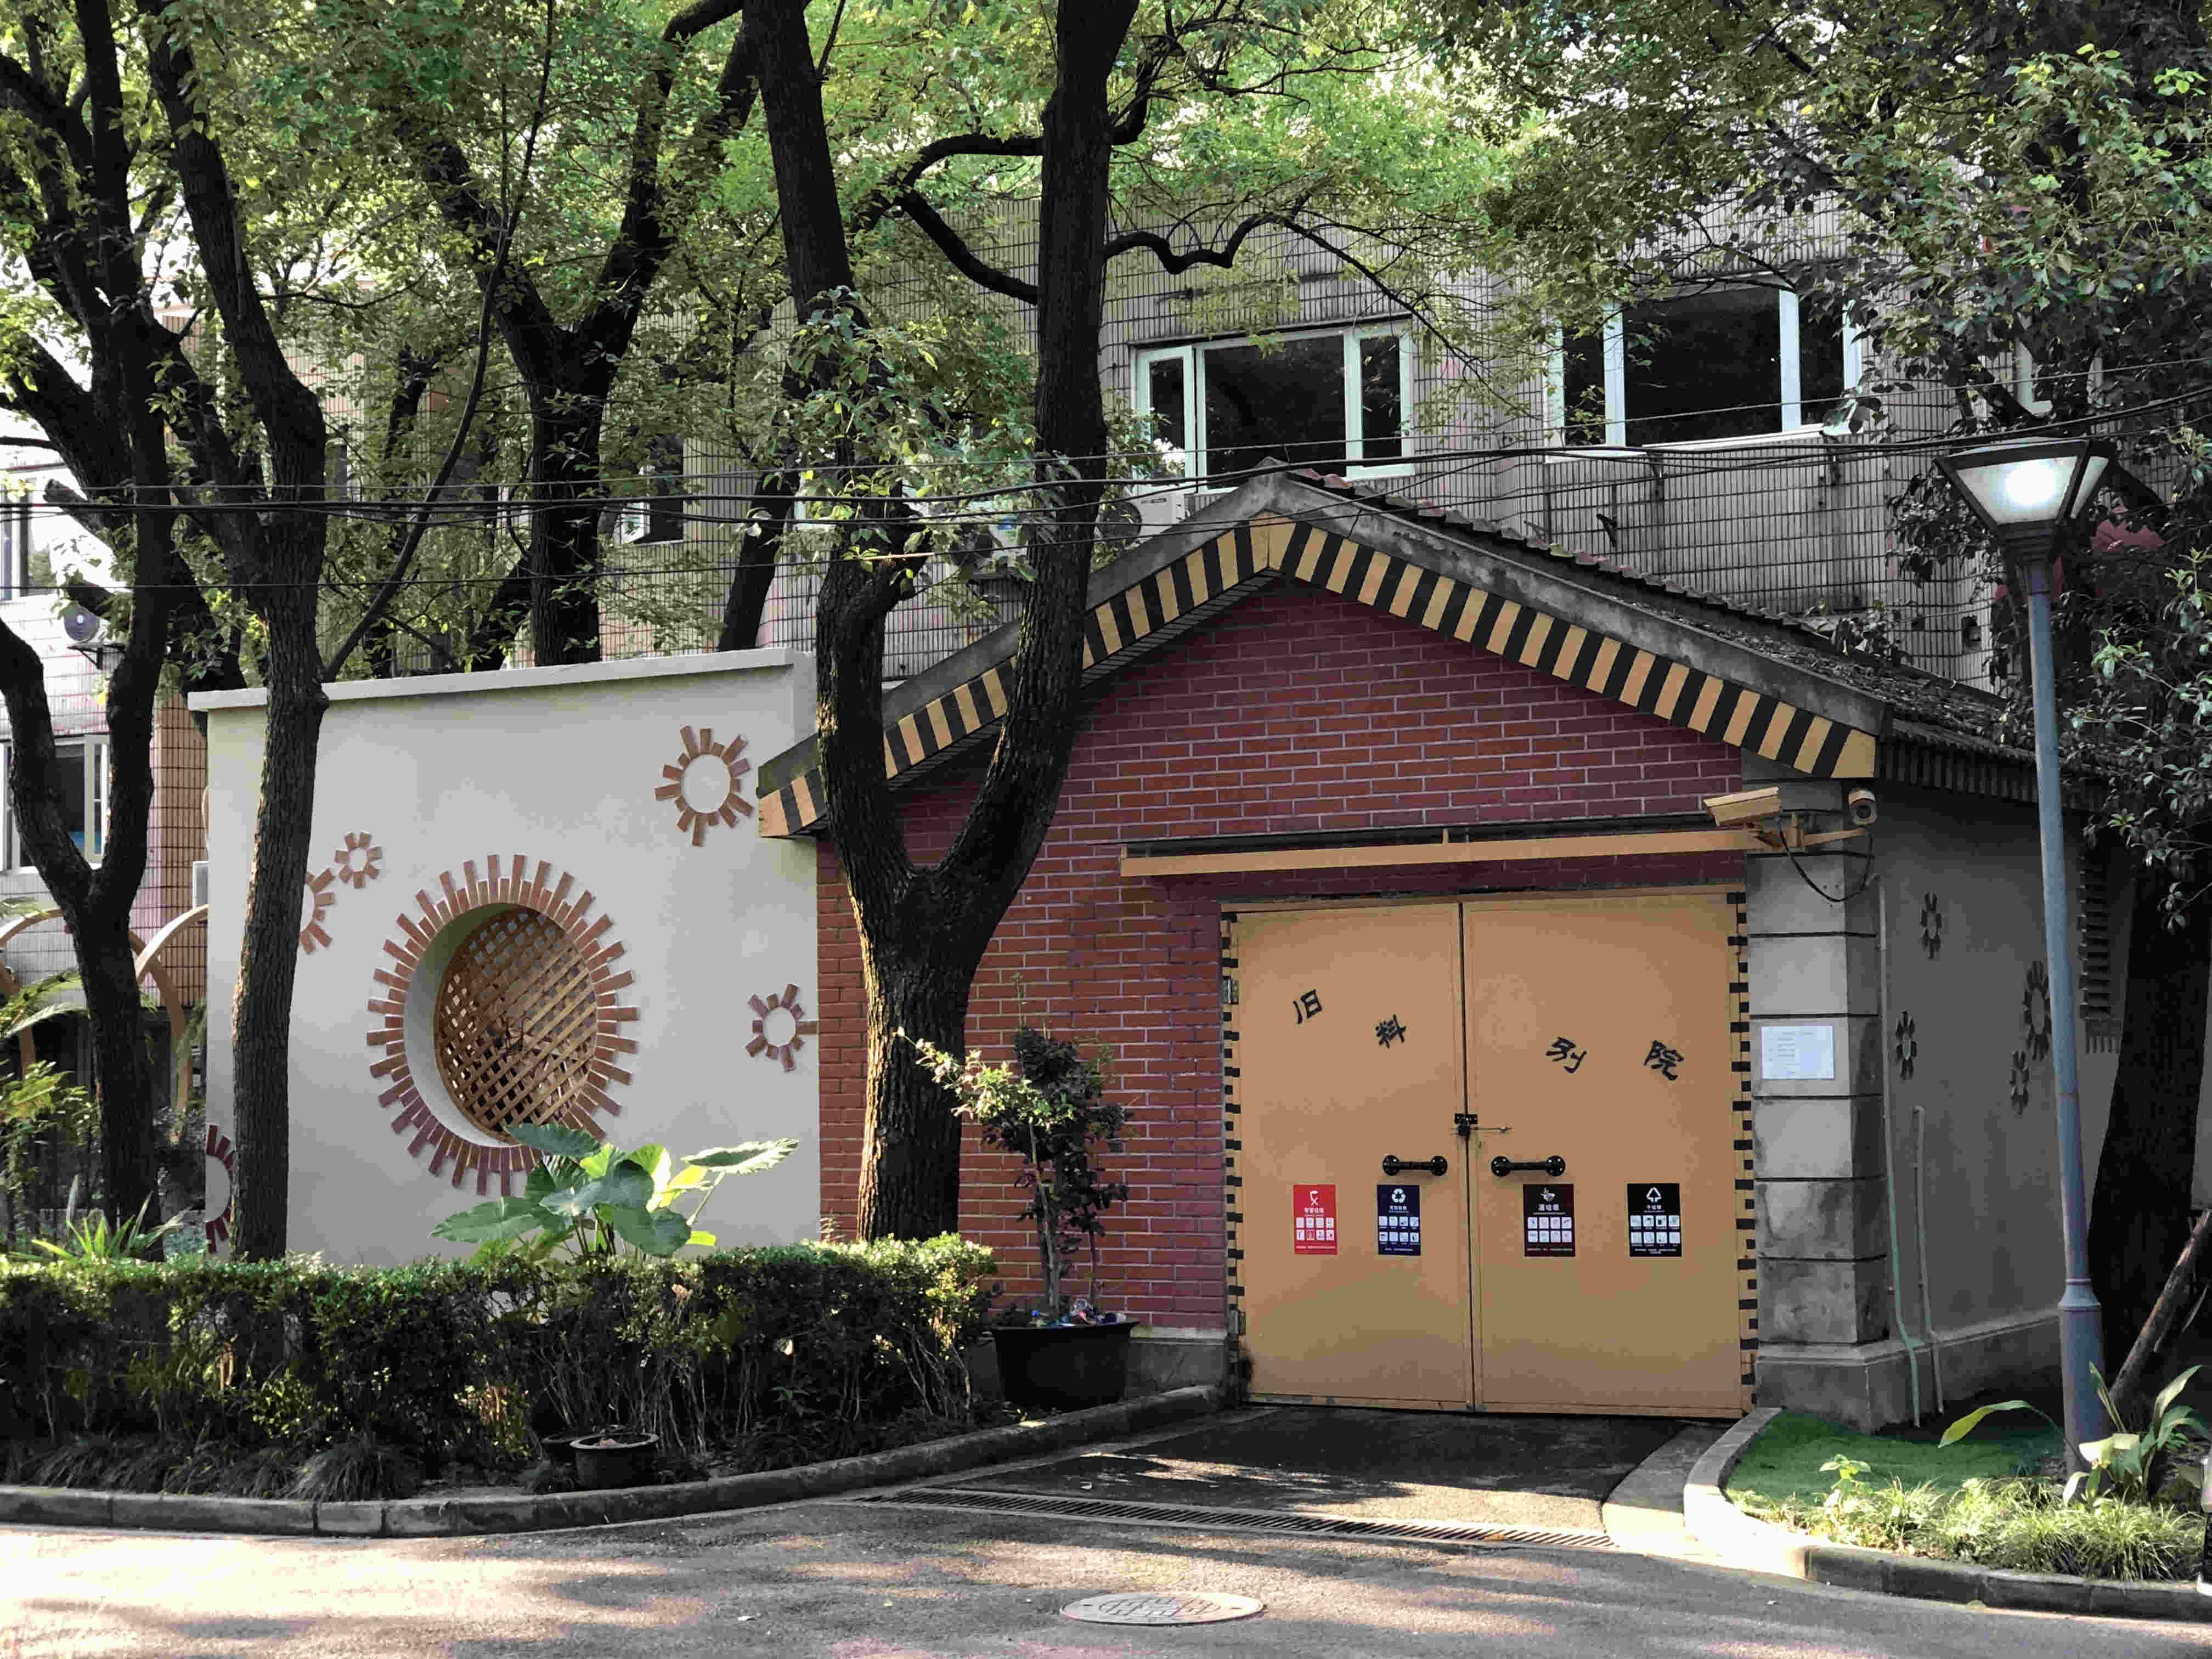 上海音乐学院对垃圾房作了精心改造，并取名“旧料别院” ，图为旧料别院正面图.jpg